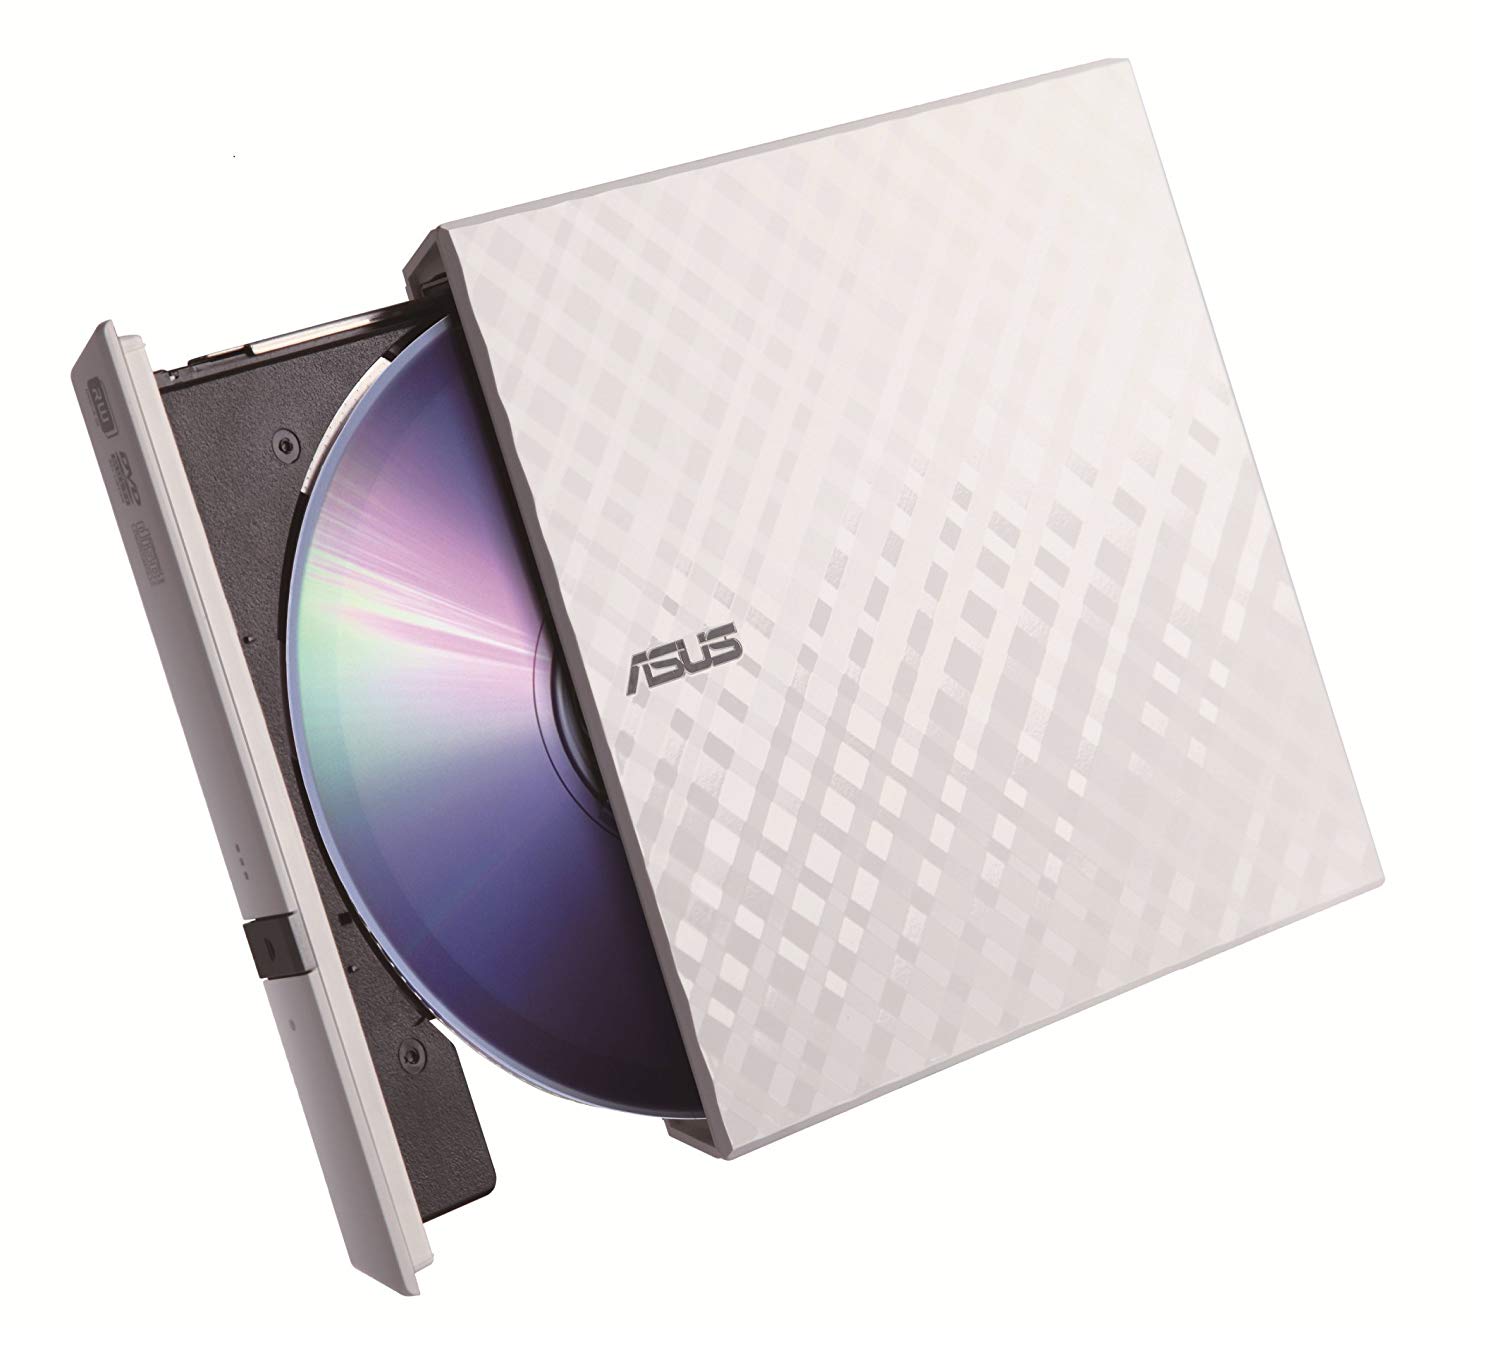 ASUS SDRW-08D2S-U LITE 8X Harici DVD Yazıcı, Beyaz